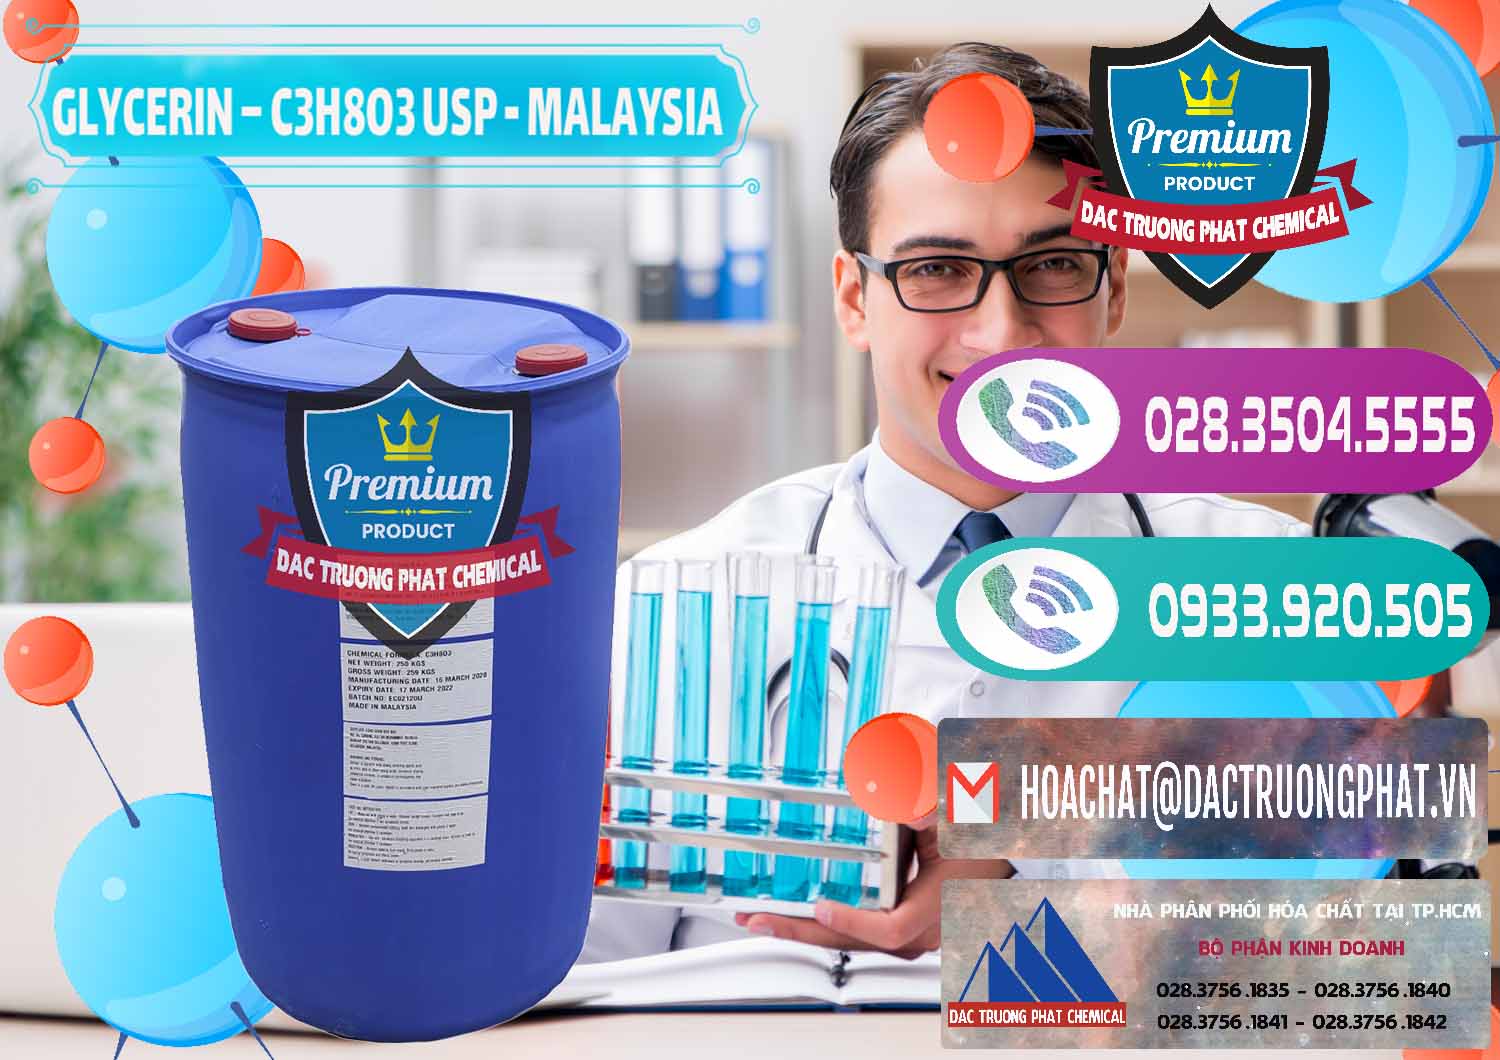 Cty chuyên cung cấp & bán Glycerin – C3H8O3 USP Malaysia - 0233 - Kinh doanh & cung cấp hóa chất tại TP.HCM - hoachatxulynuoc.com